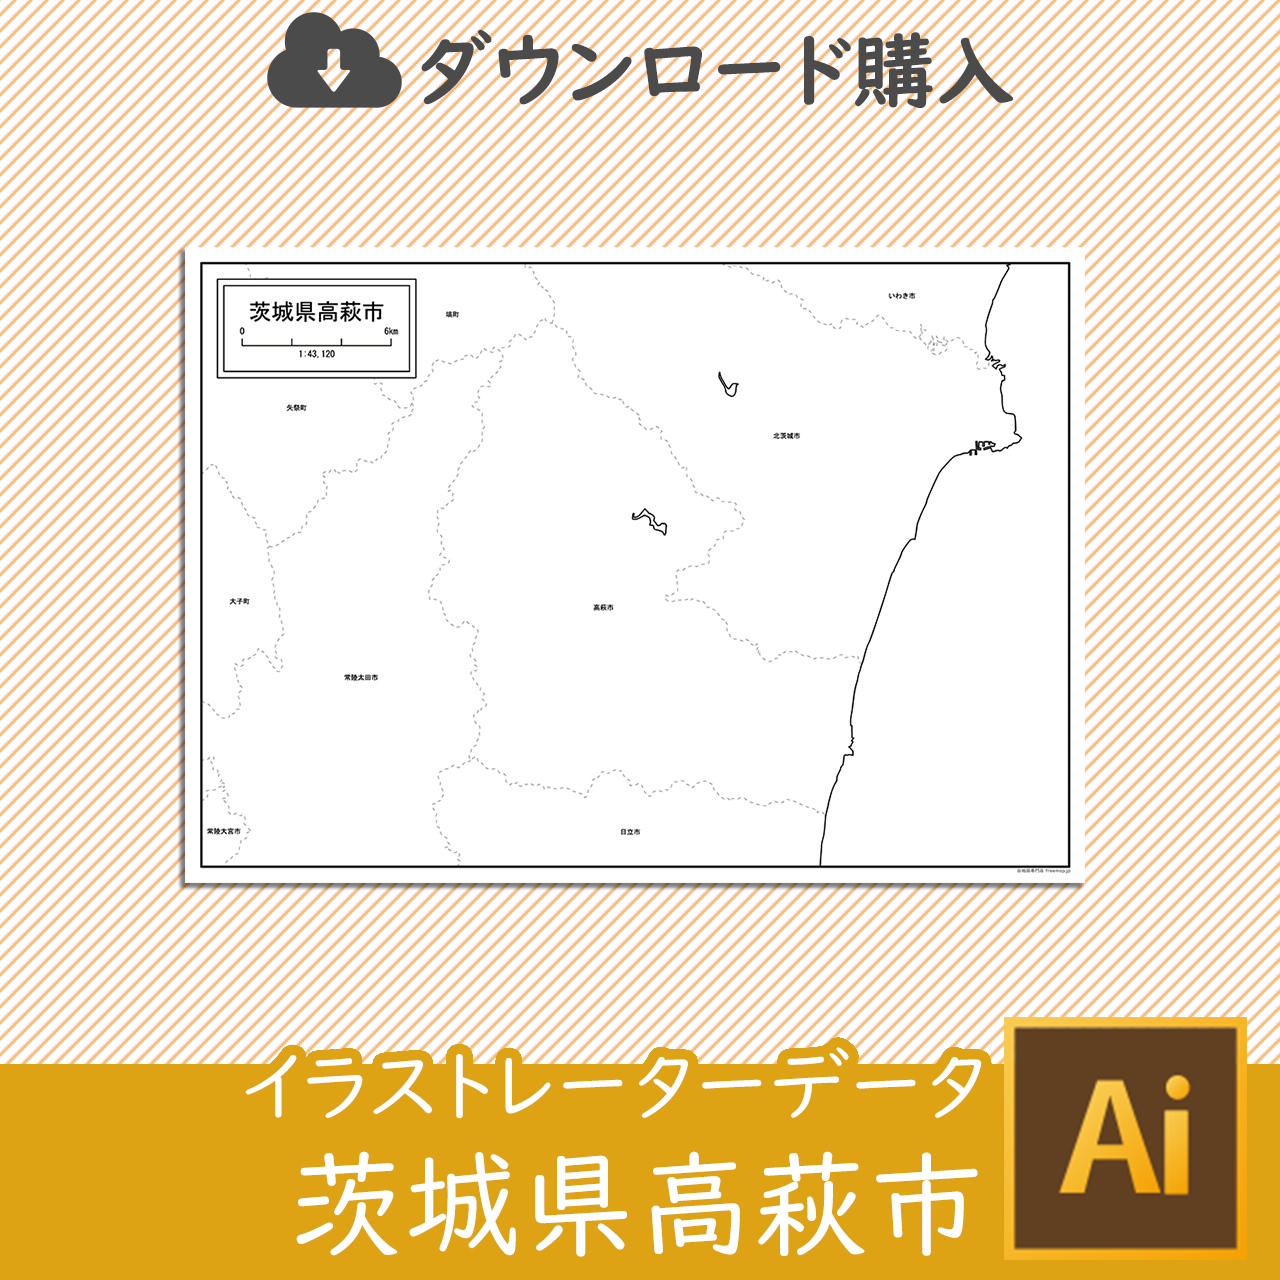 高萩市のaiデータのサムネイル画像